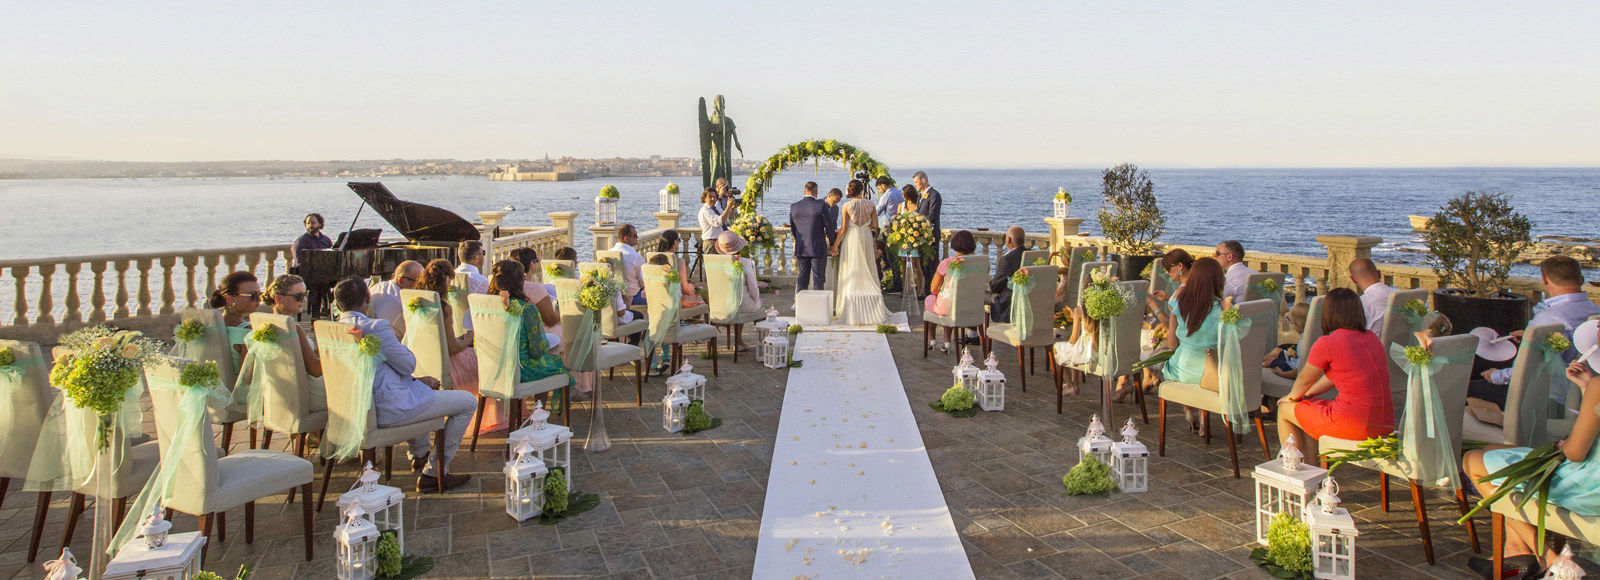 Wedding venue in Sicily 3